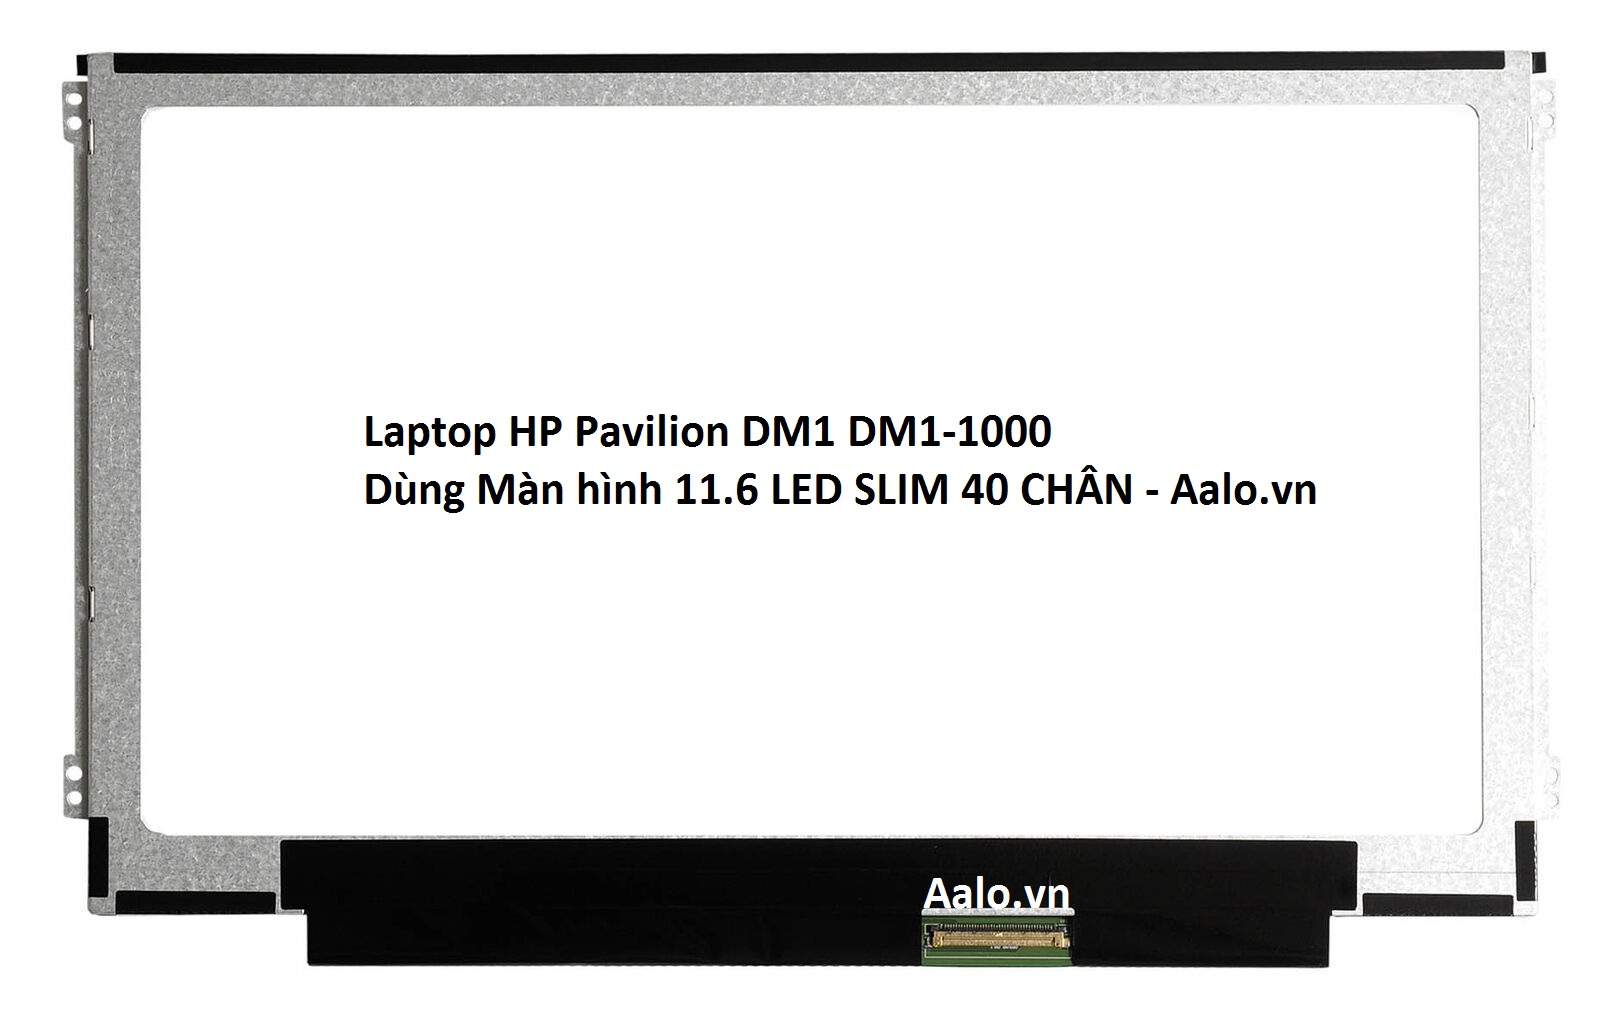 Màn hình Laptop HP Pavilion DM1 DM1-1000 - Aalo.vn